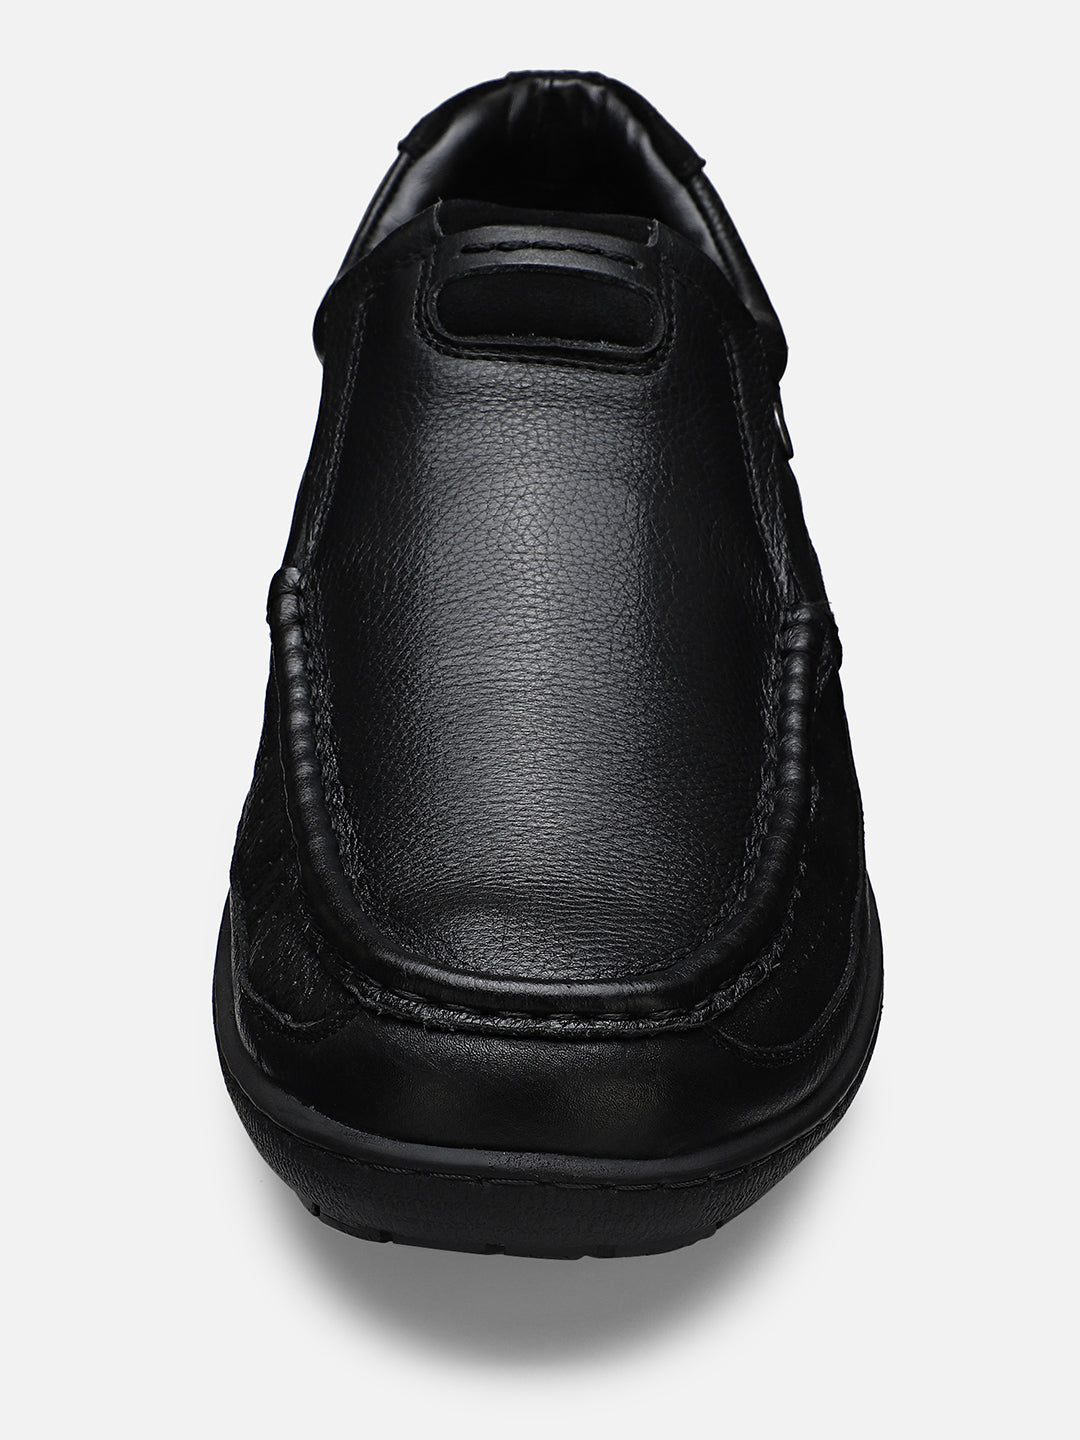 Ezok Men Haig 2184 Black Leather Casual Shoes